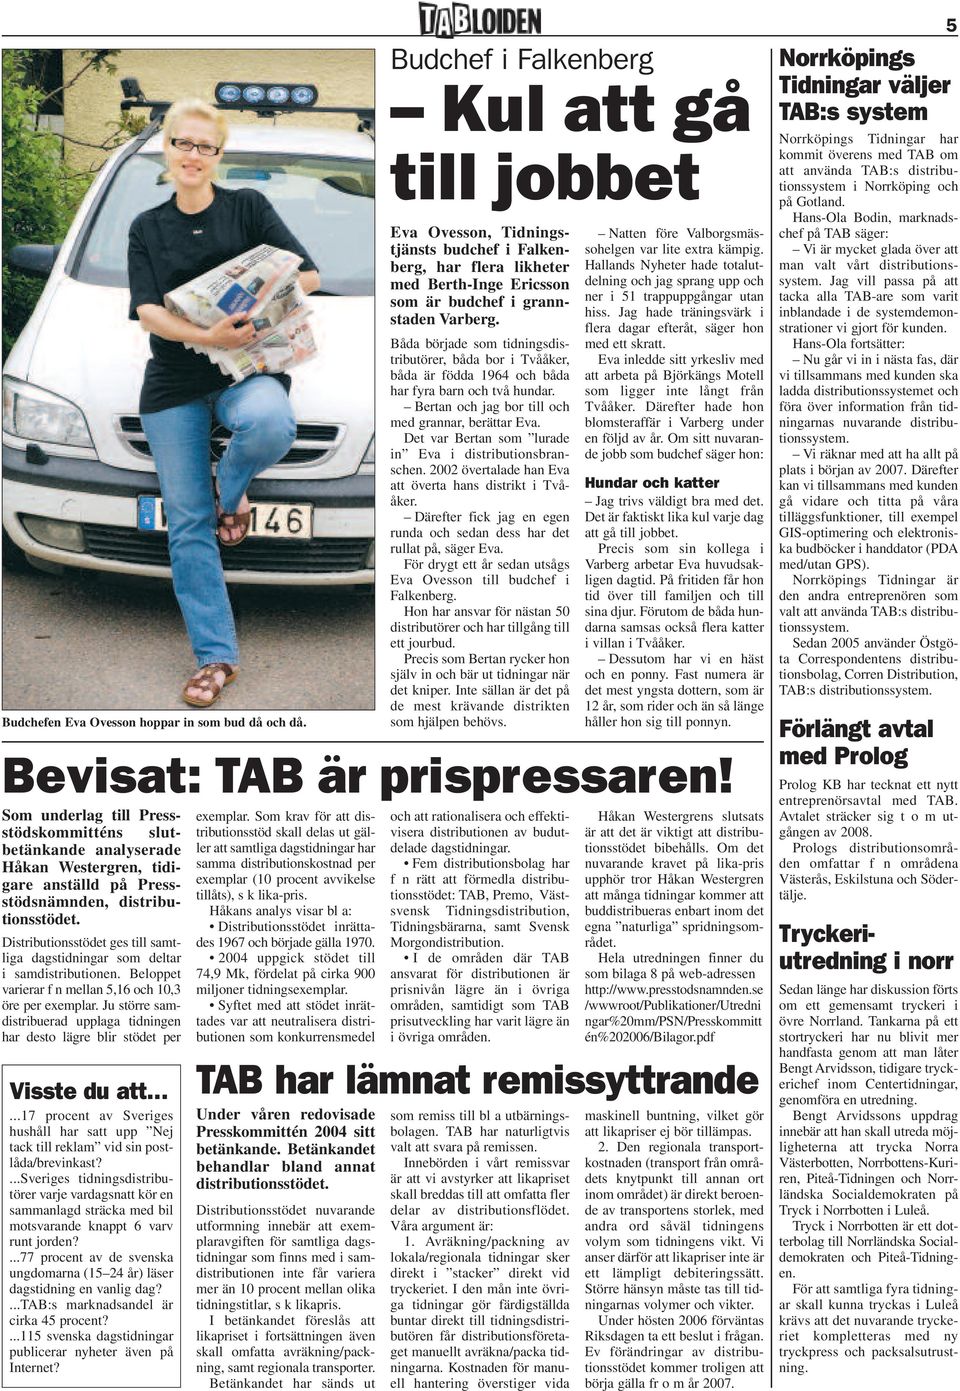 ...77 procent av de svenska ungdomarna (15 24 år) läser dagstidning en vanlig dag?...tab:s marknadsandel är cirka 45 procent?...115 svenska dagstidningar publicerar nyheter även på Internet?